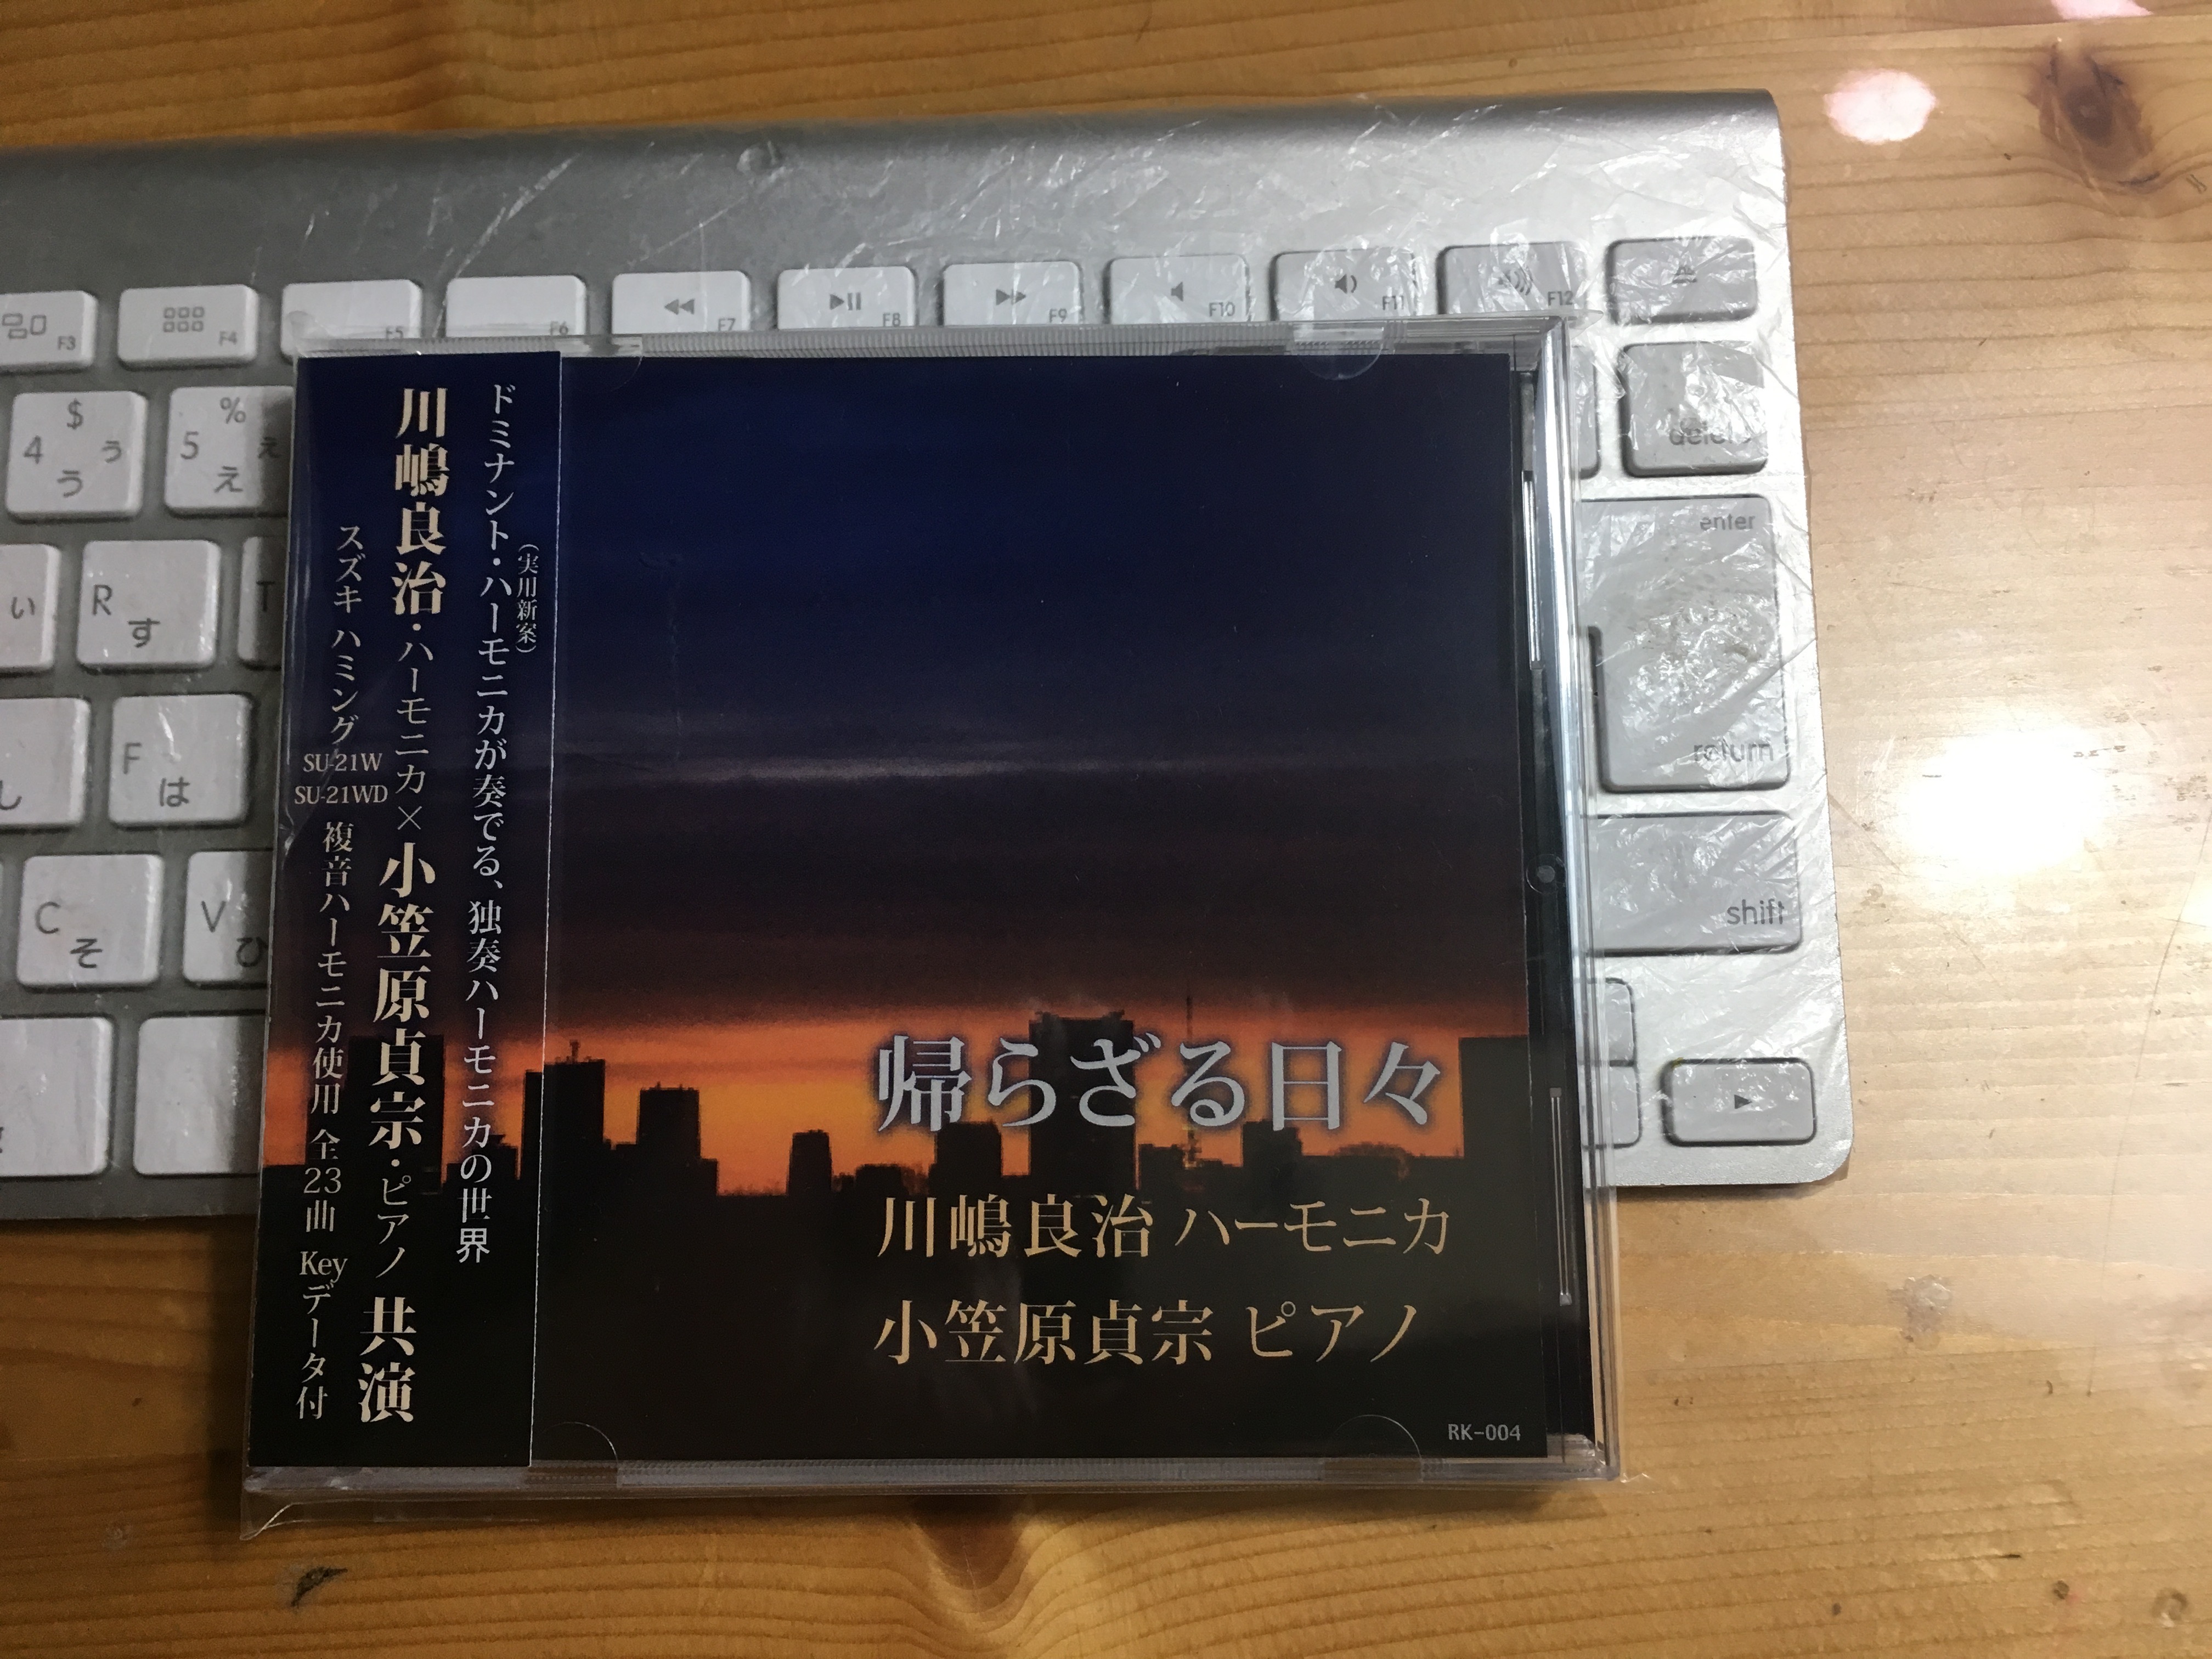 CD,DVD,Blu-rayパッケージ製品化/ | カナイさんのCD工房web版